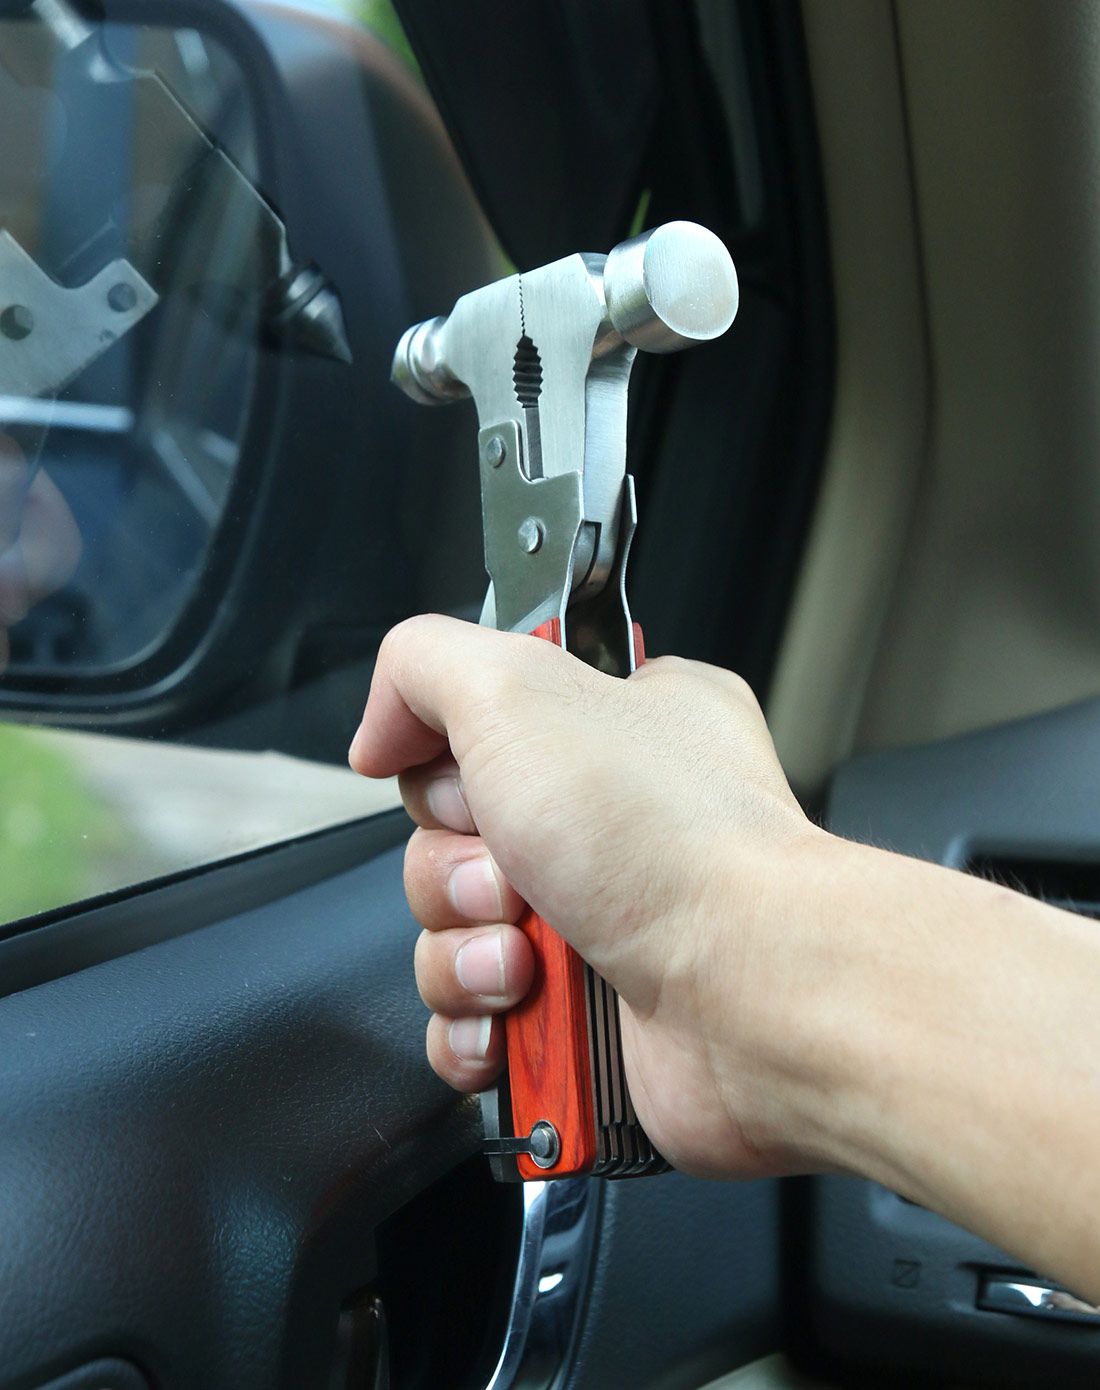 安全锤子应该锤车窗哪个部位_车用安全锤的使用方法_汽车安全